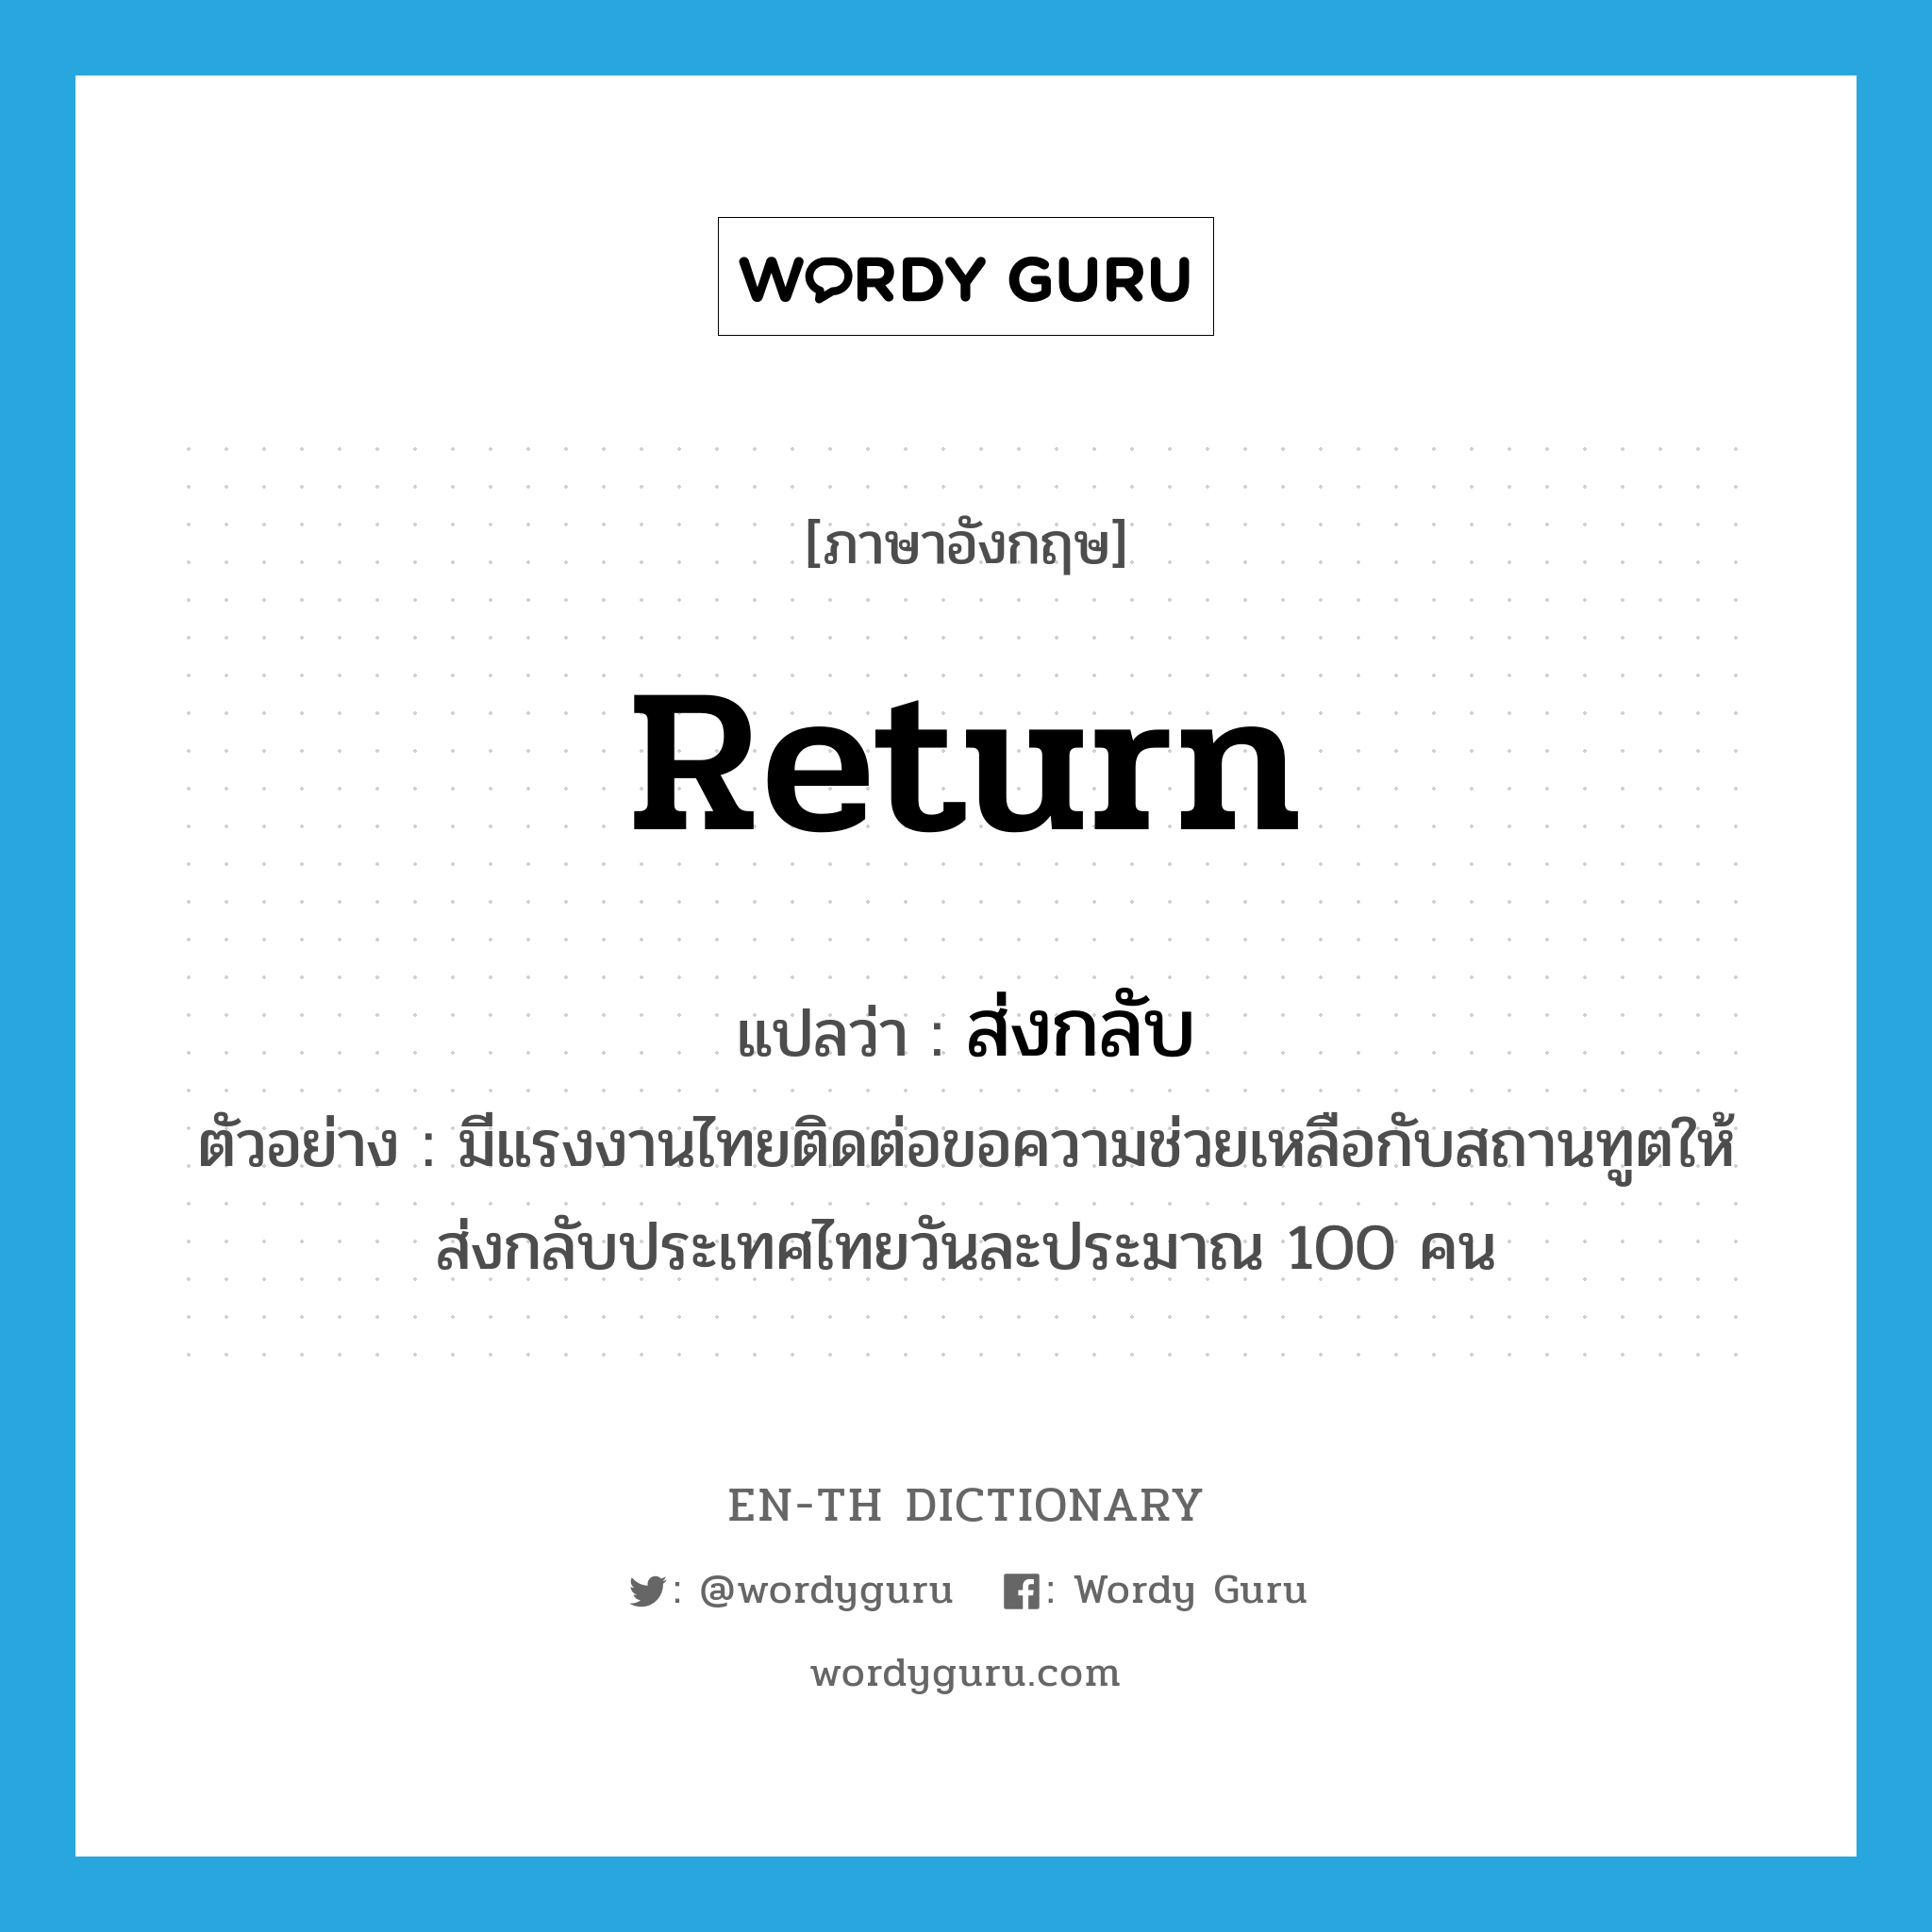 return แปลว่า?, คำศัพท์ภาษาอังกฤษ return แปลว่า ส่งกลับ ประเภท V ตัวอย่าง มีแรงงานไทยติดต่อขอความช่วยเหลือกับสถานทูตให้ส่งกลับประเทศไทยวันละประมาณ 100 คน หมวด V